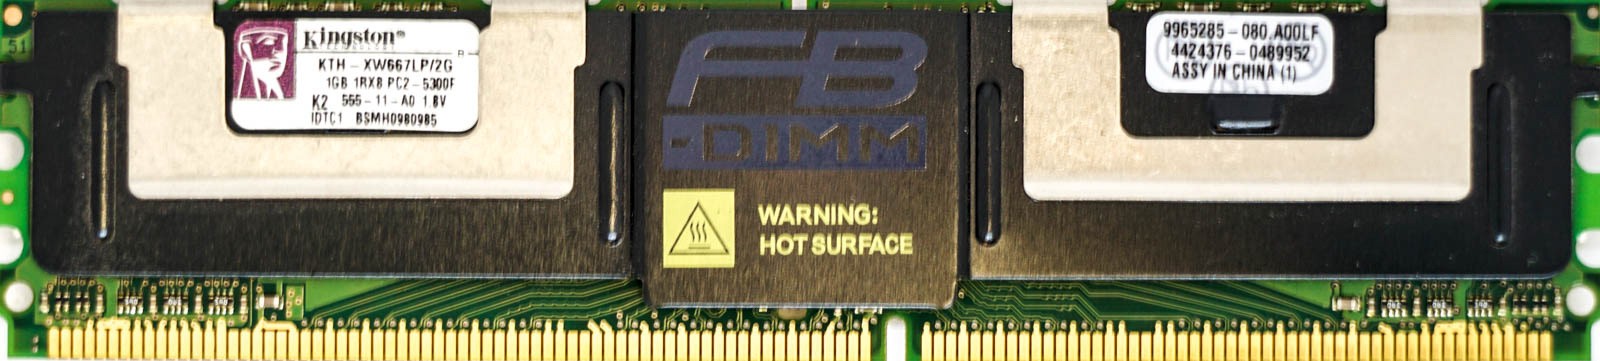 Kingston - 1GB PC2-5300F (DDR2-667Mhz, 1RX8)